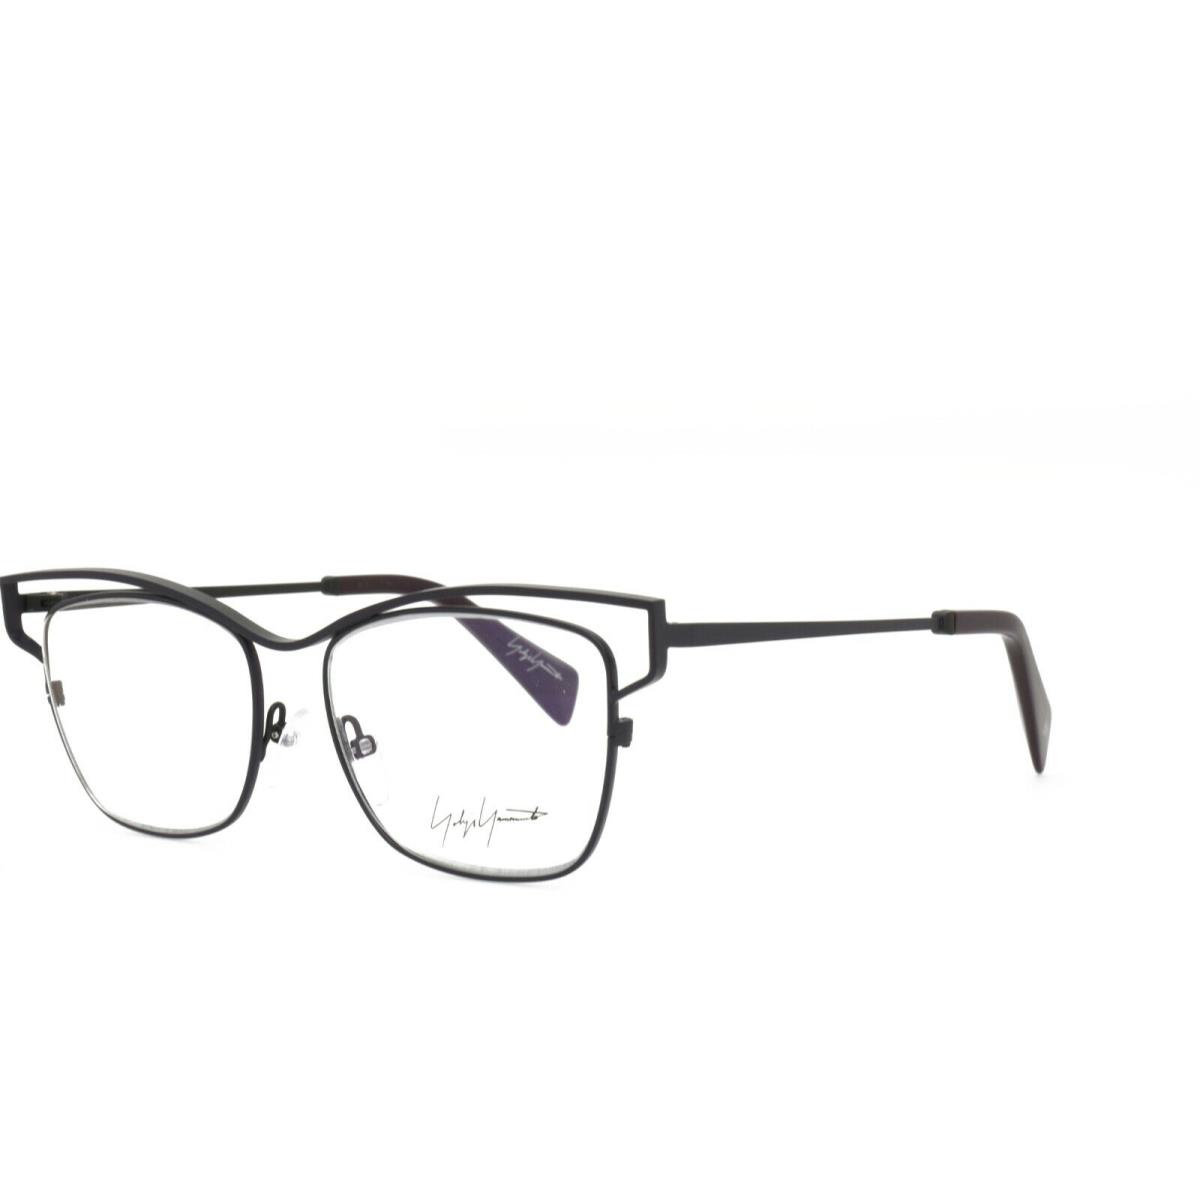 Yohji Yamamoto 3019 701 Eyeglasses 51-16-145 Black